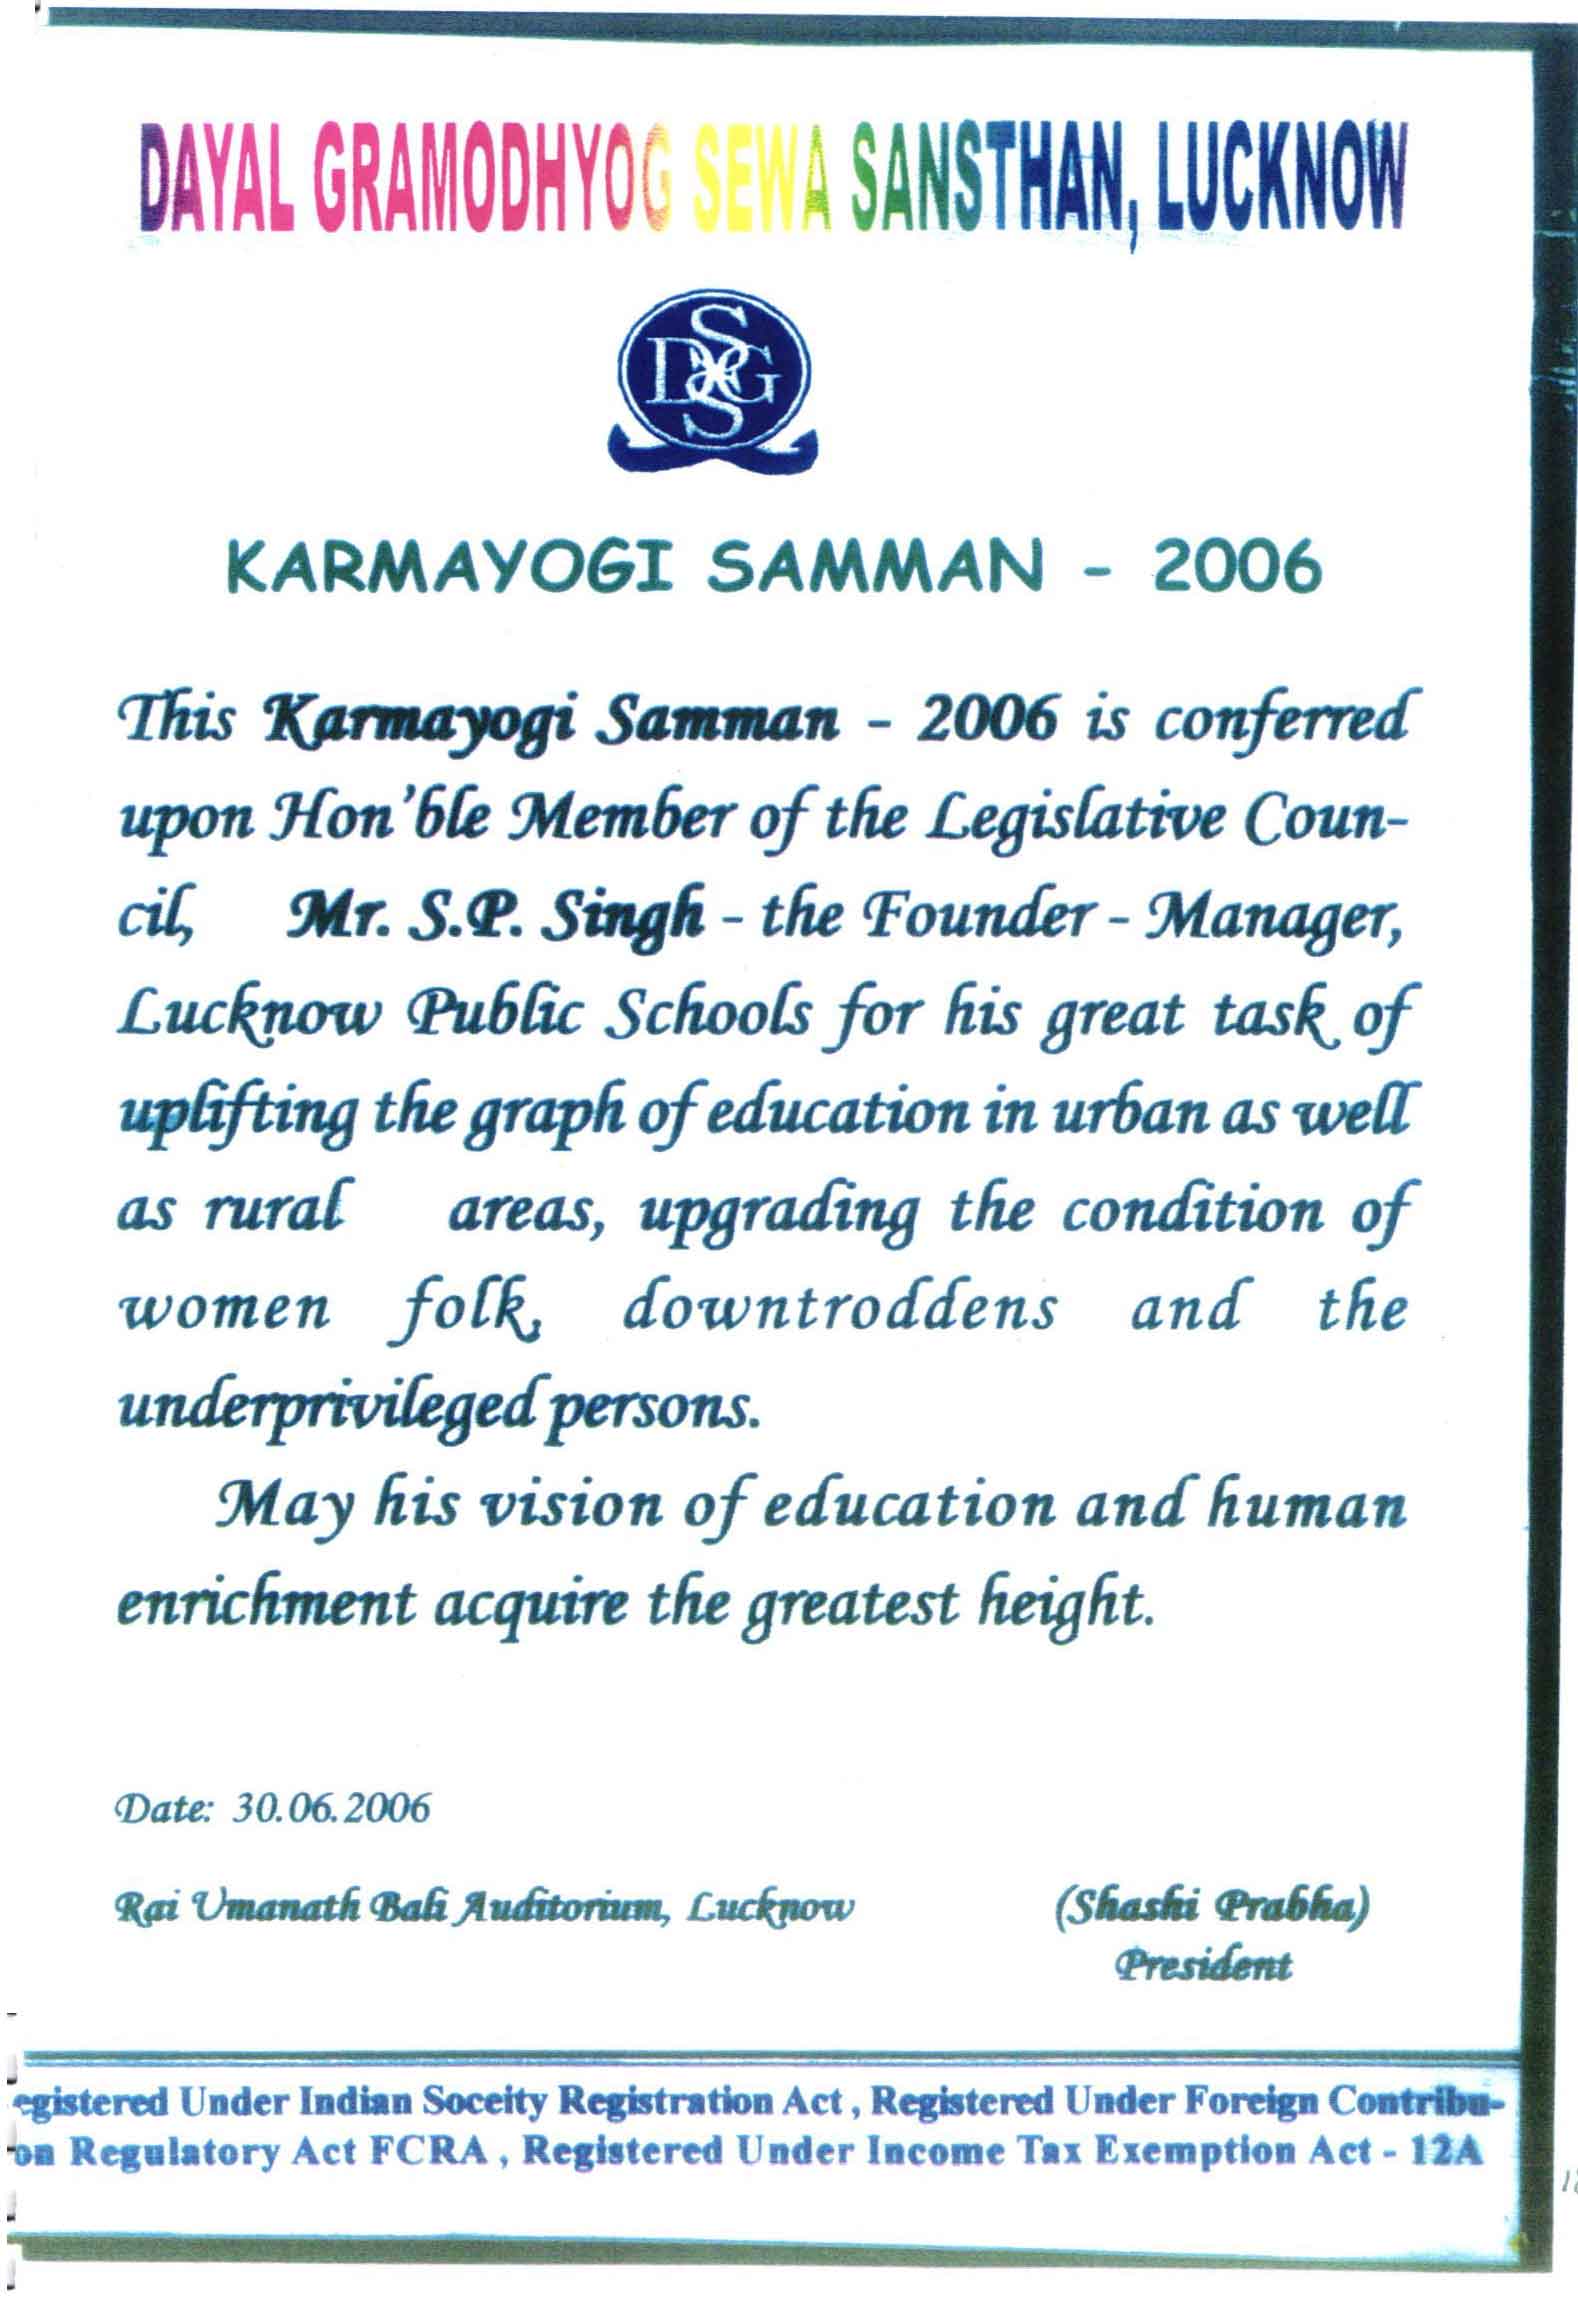 Karmayogi Samman 2006